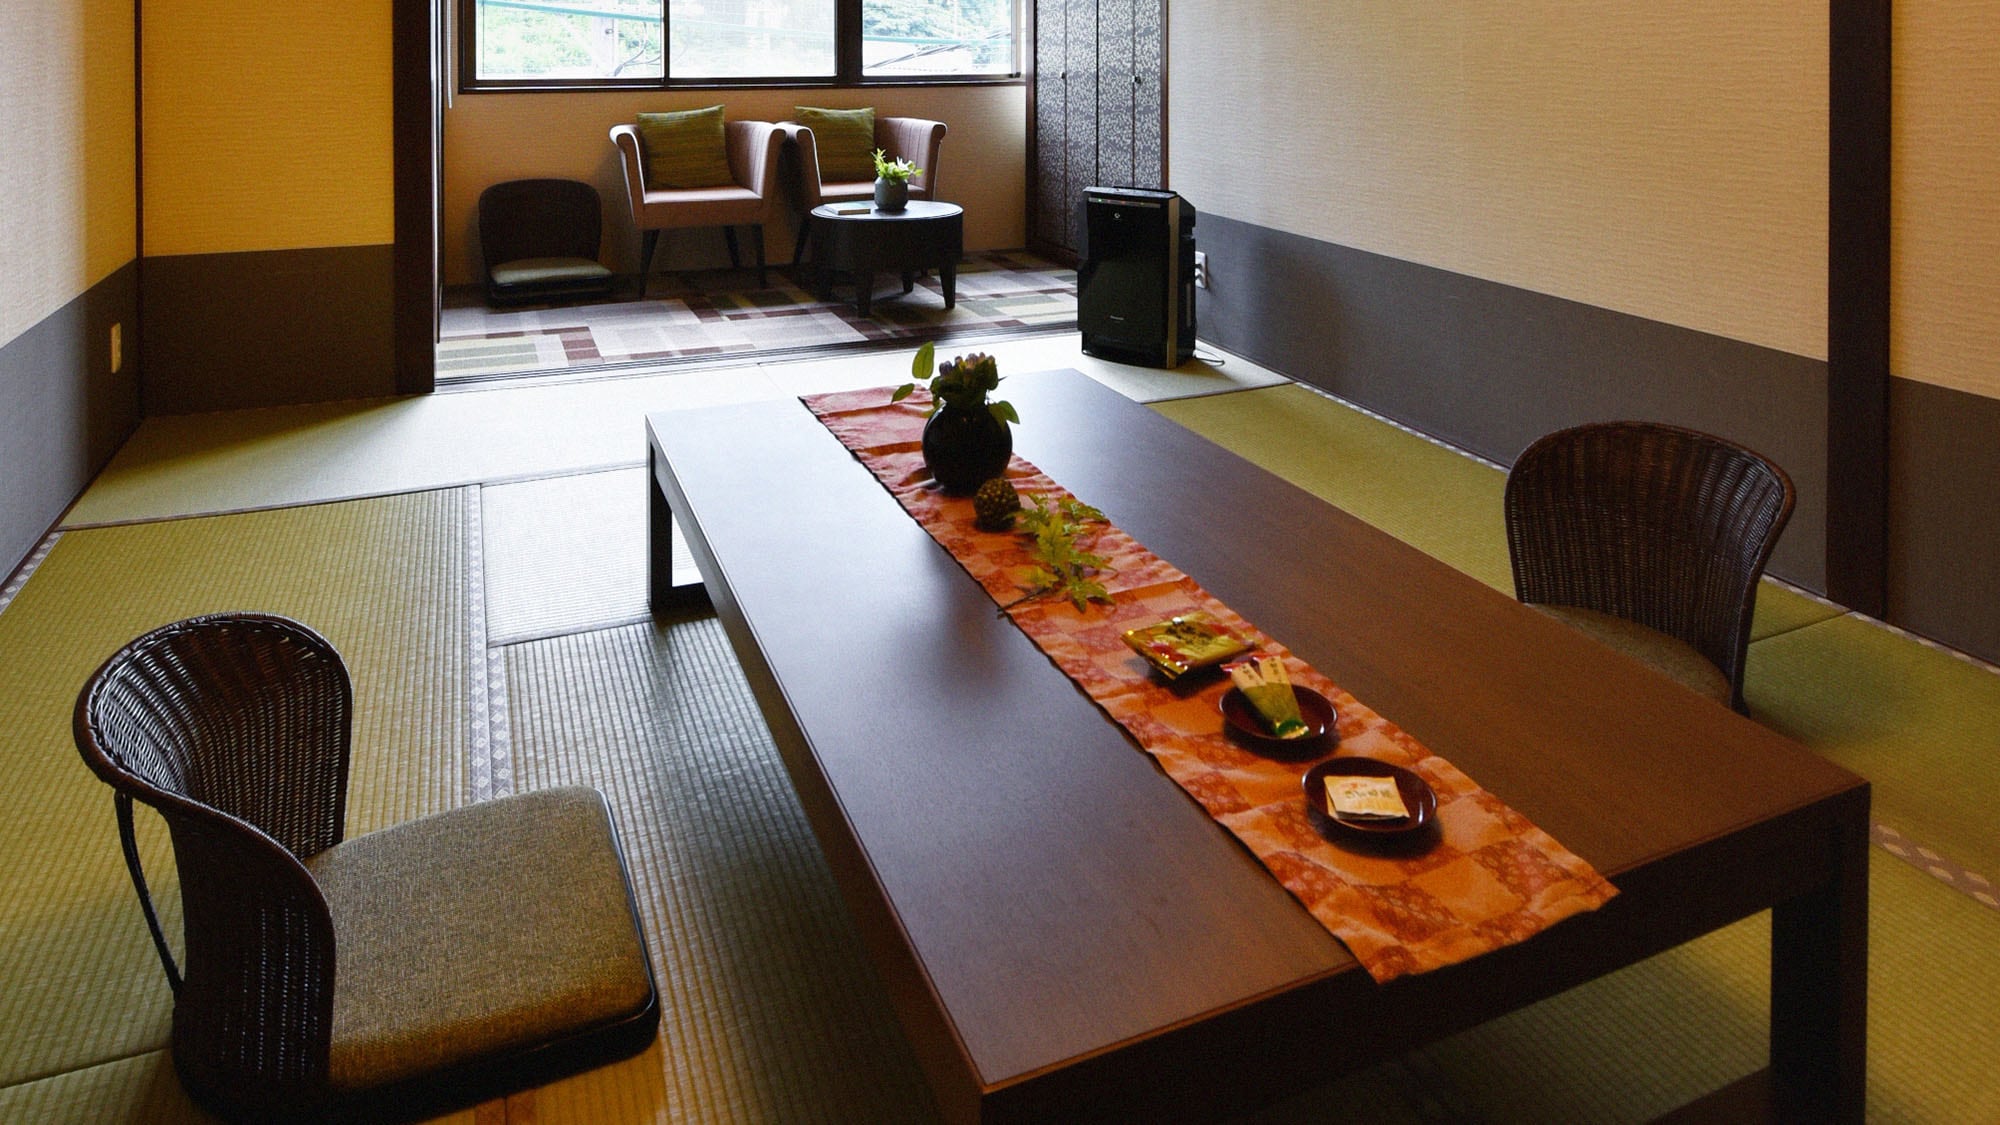 ・ [普通客房示例] 8 至 12 張榻榻米的日式房間。沒有華麗裝飾的簡單內飾